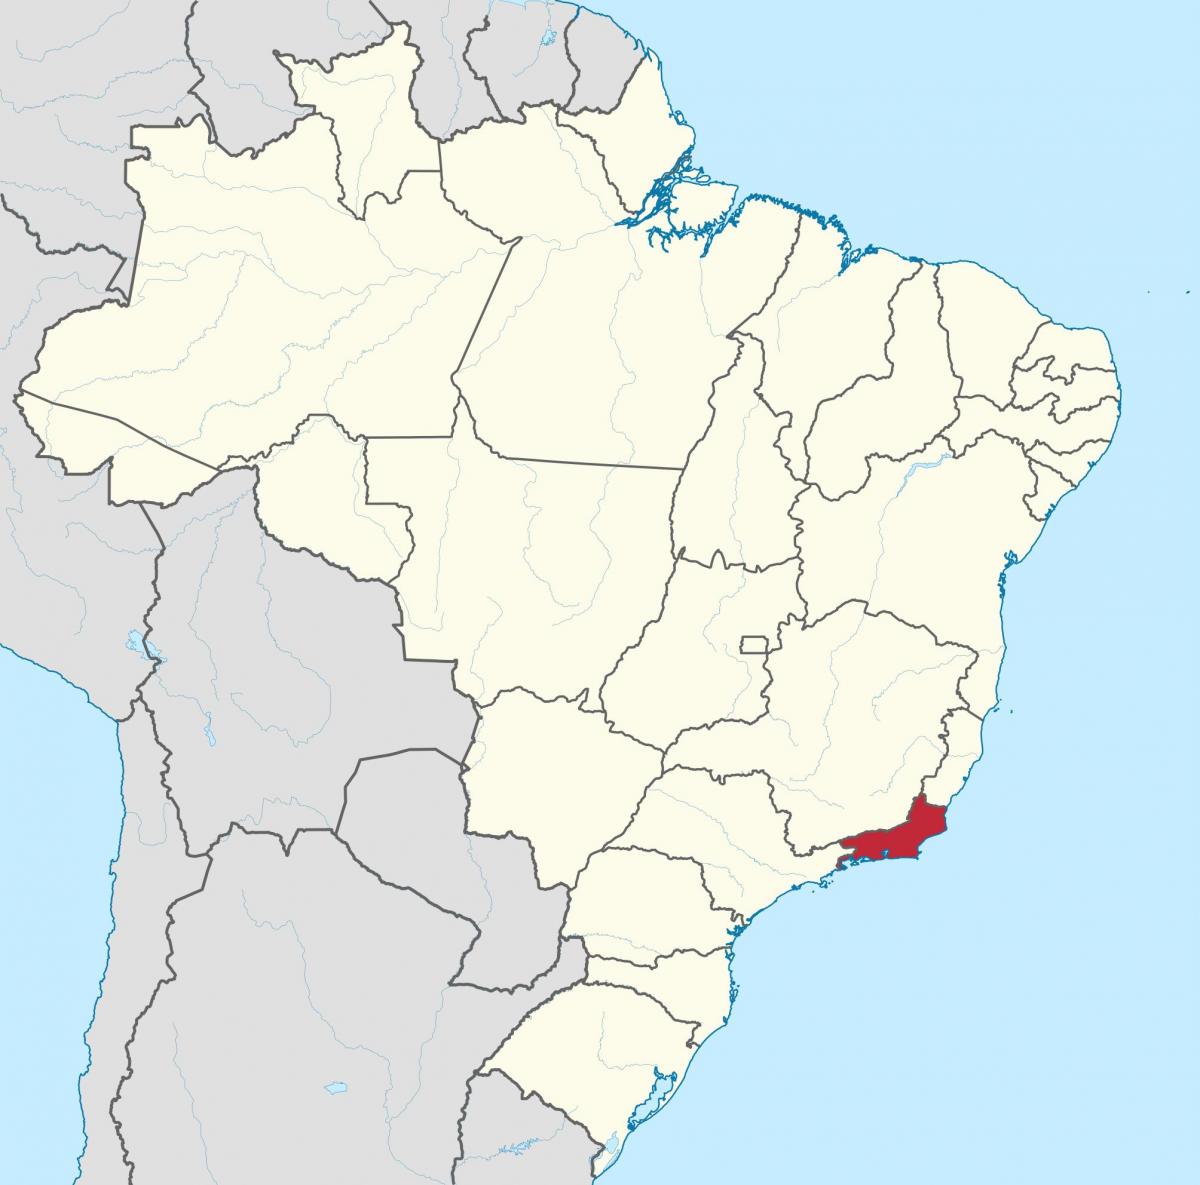 Mapa do Estado do Rio de Janeiro